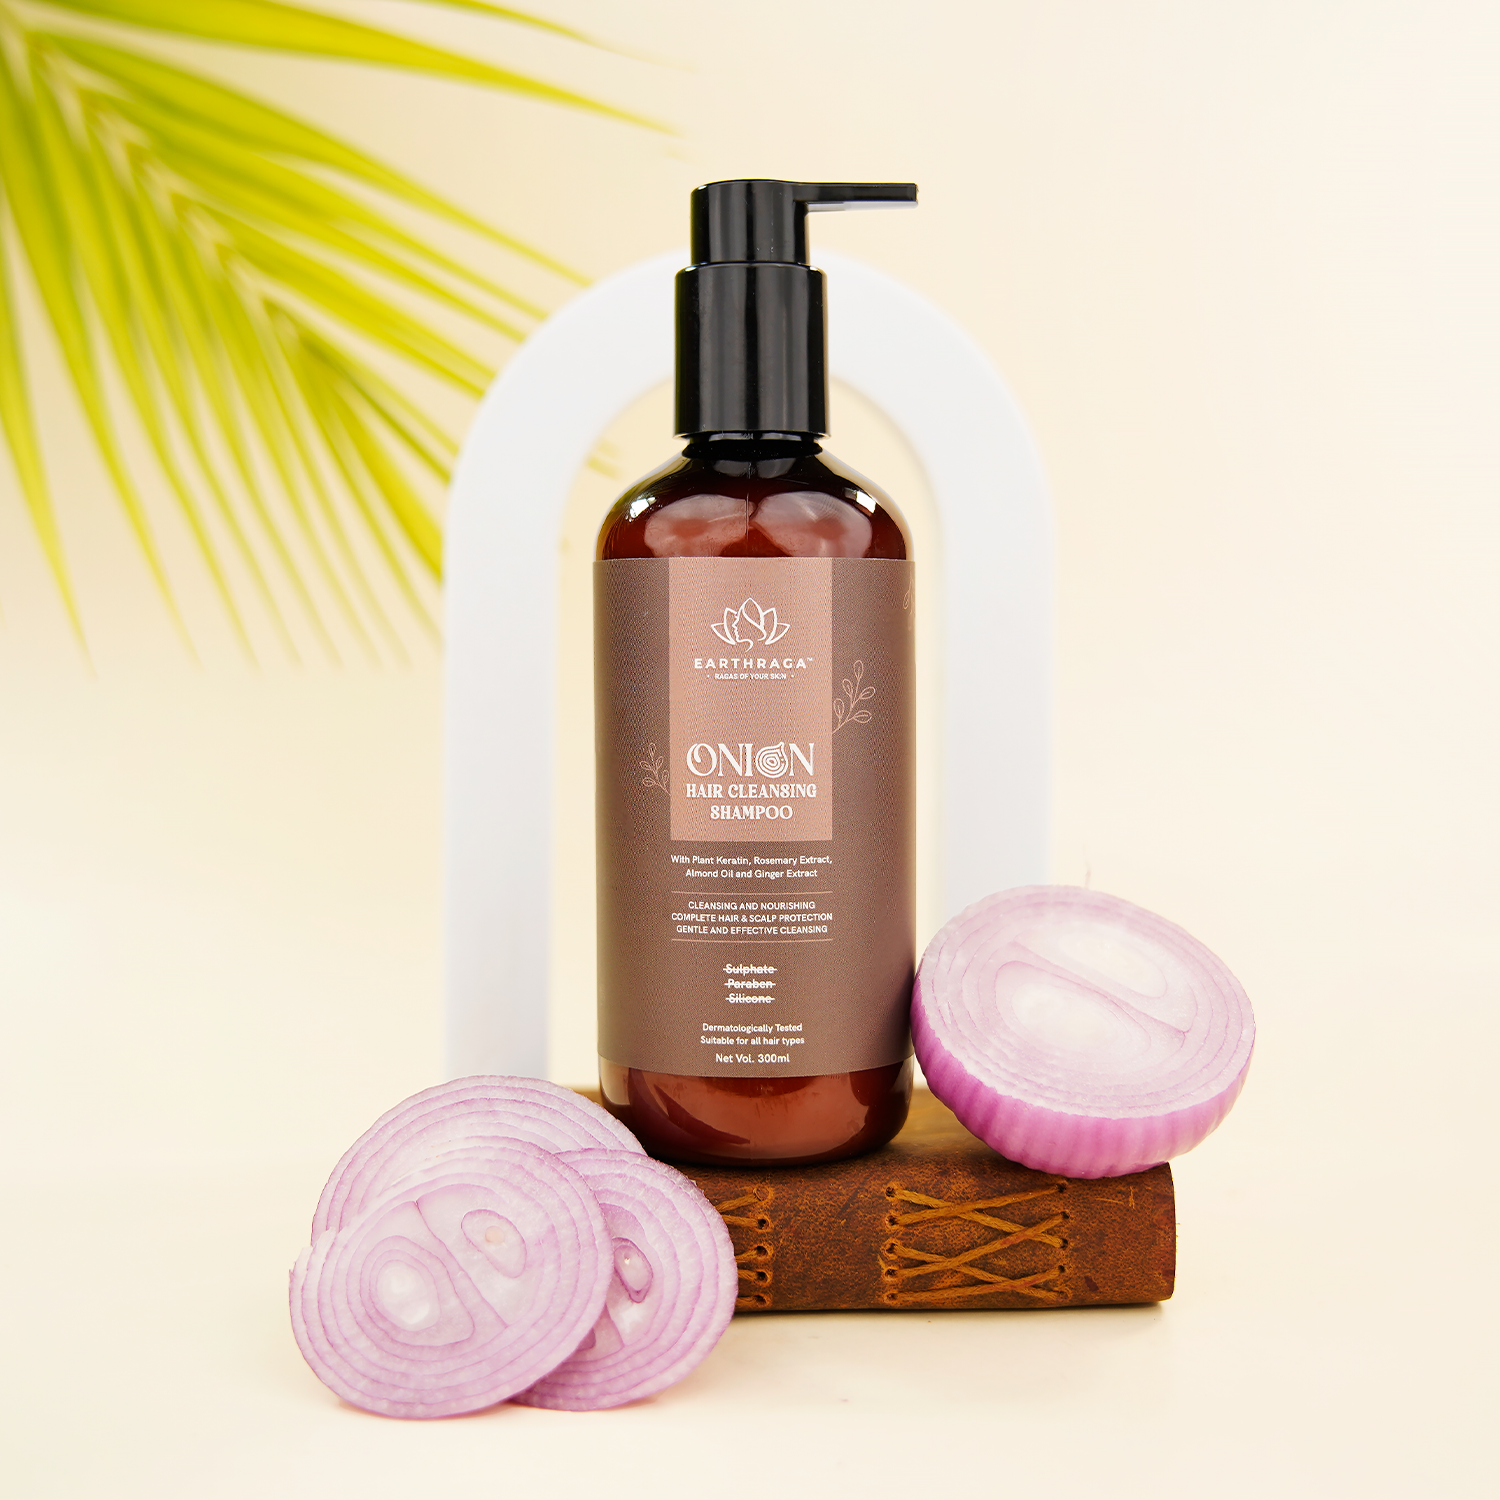 Onion Hair Cleansing Shampoo | 300ml